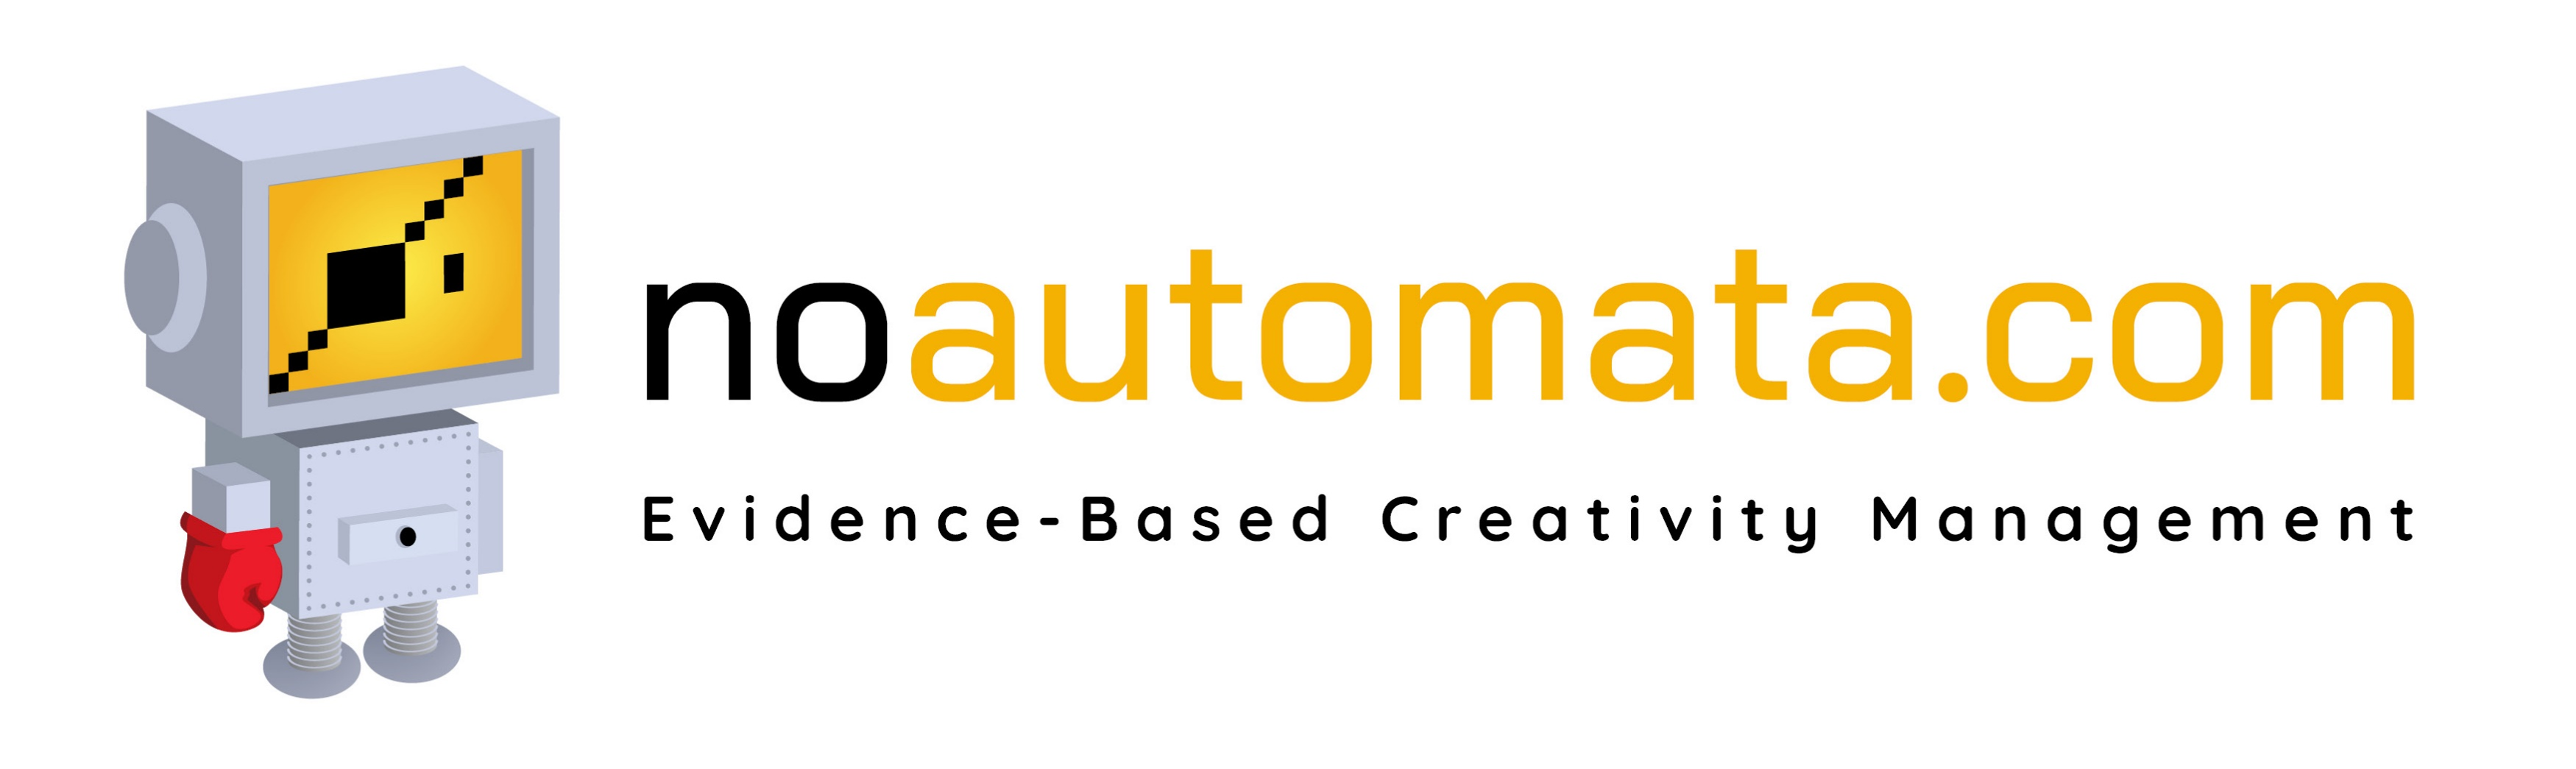 NoAutomata.com - kreatywność w organizacji - logotyp.